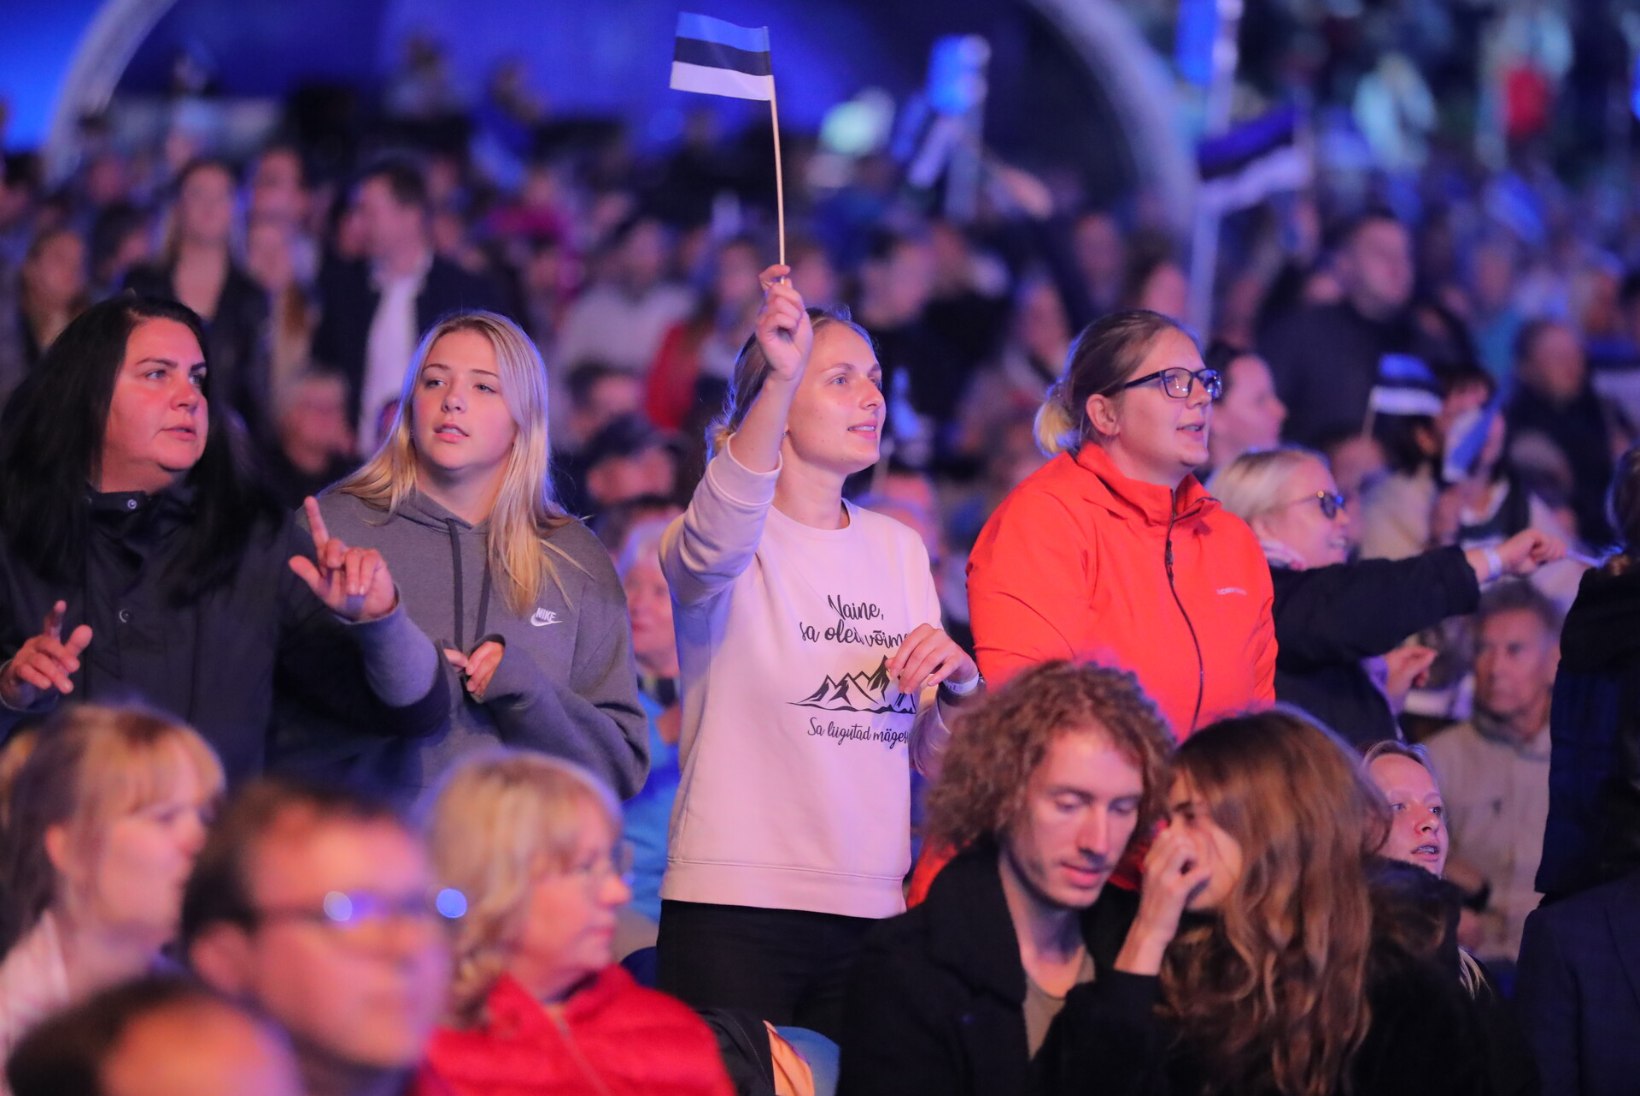 GALERII | Öölaulupidu kutsus Tallinna lauluväljakule kokku hulga rahvast